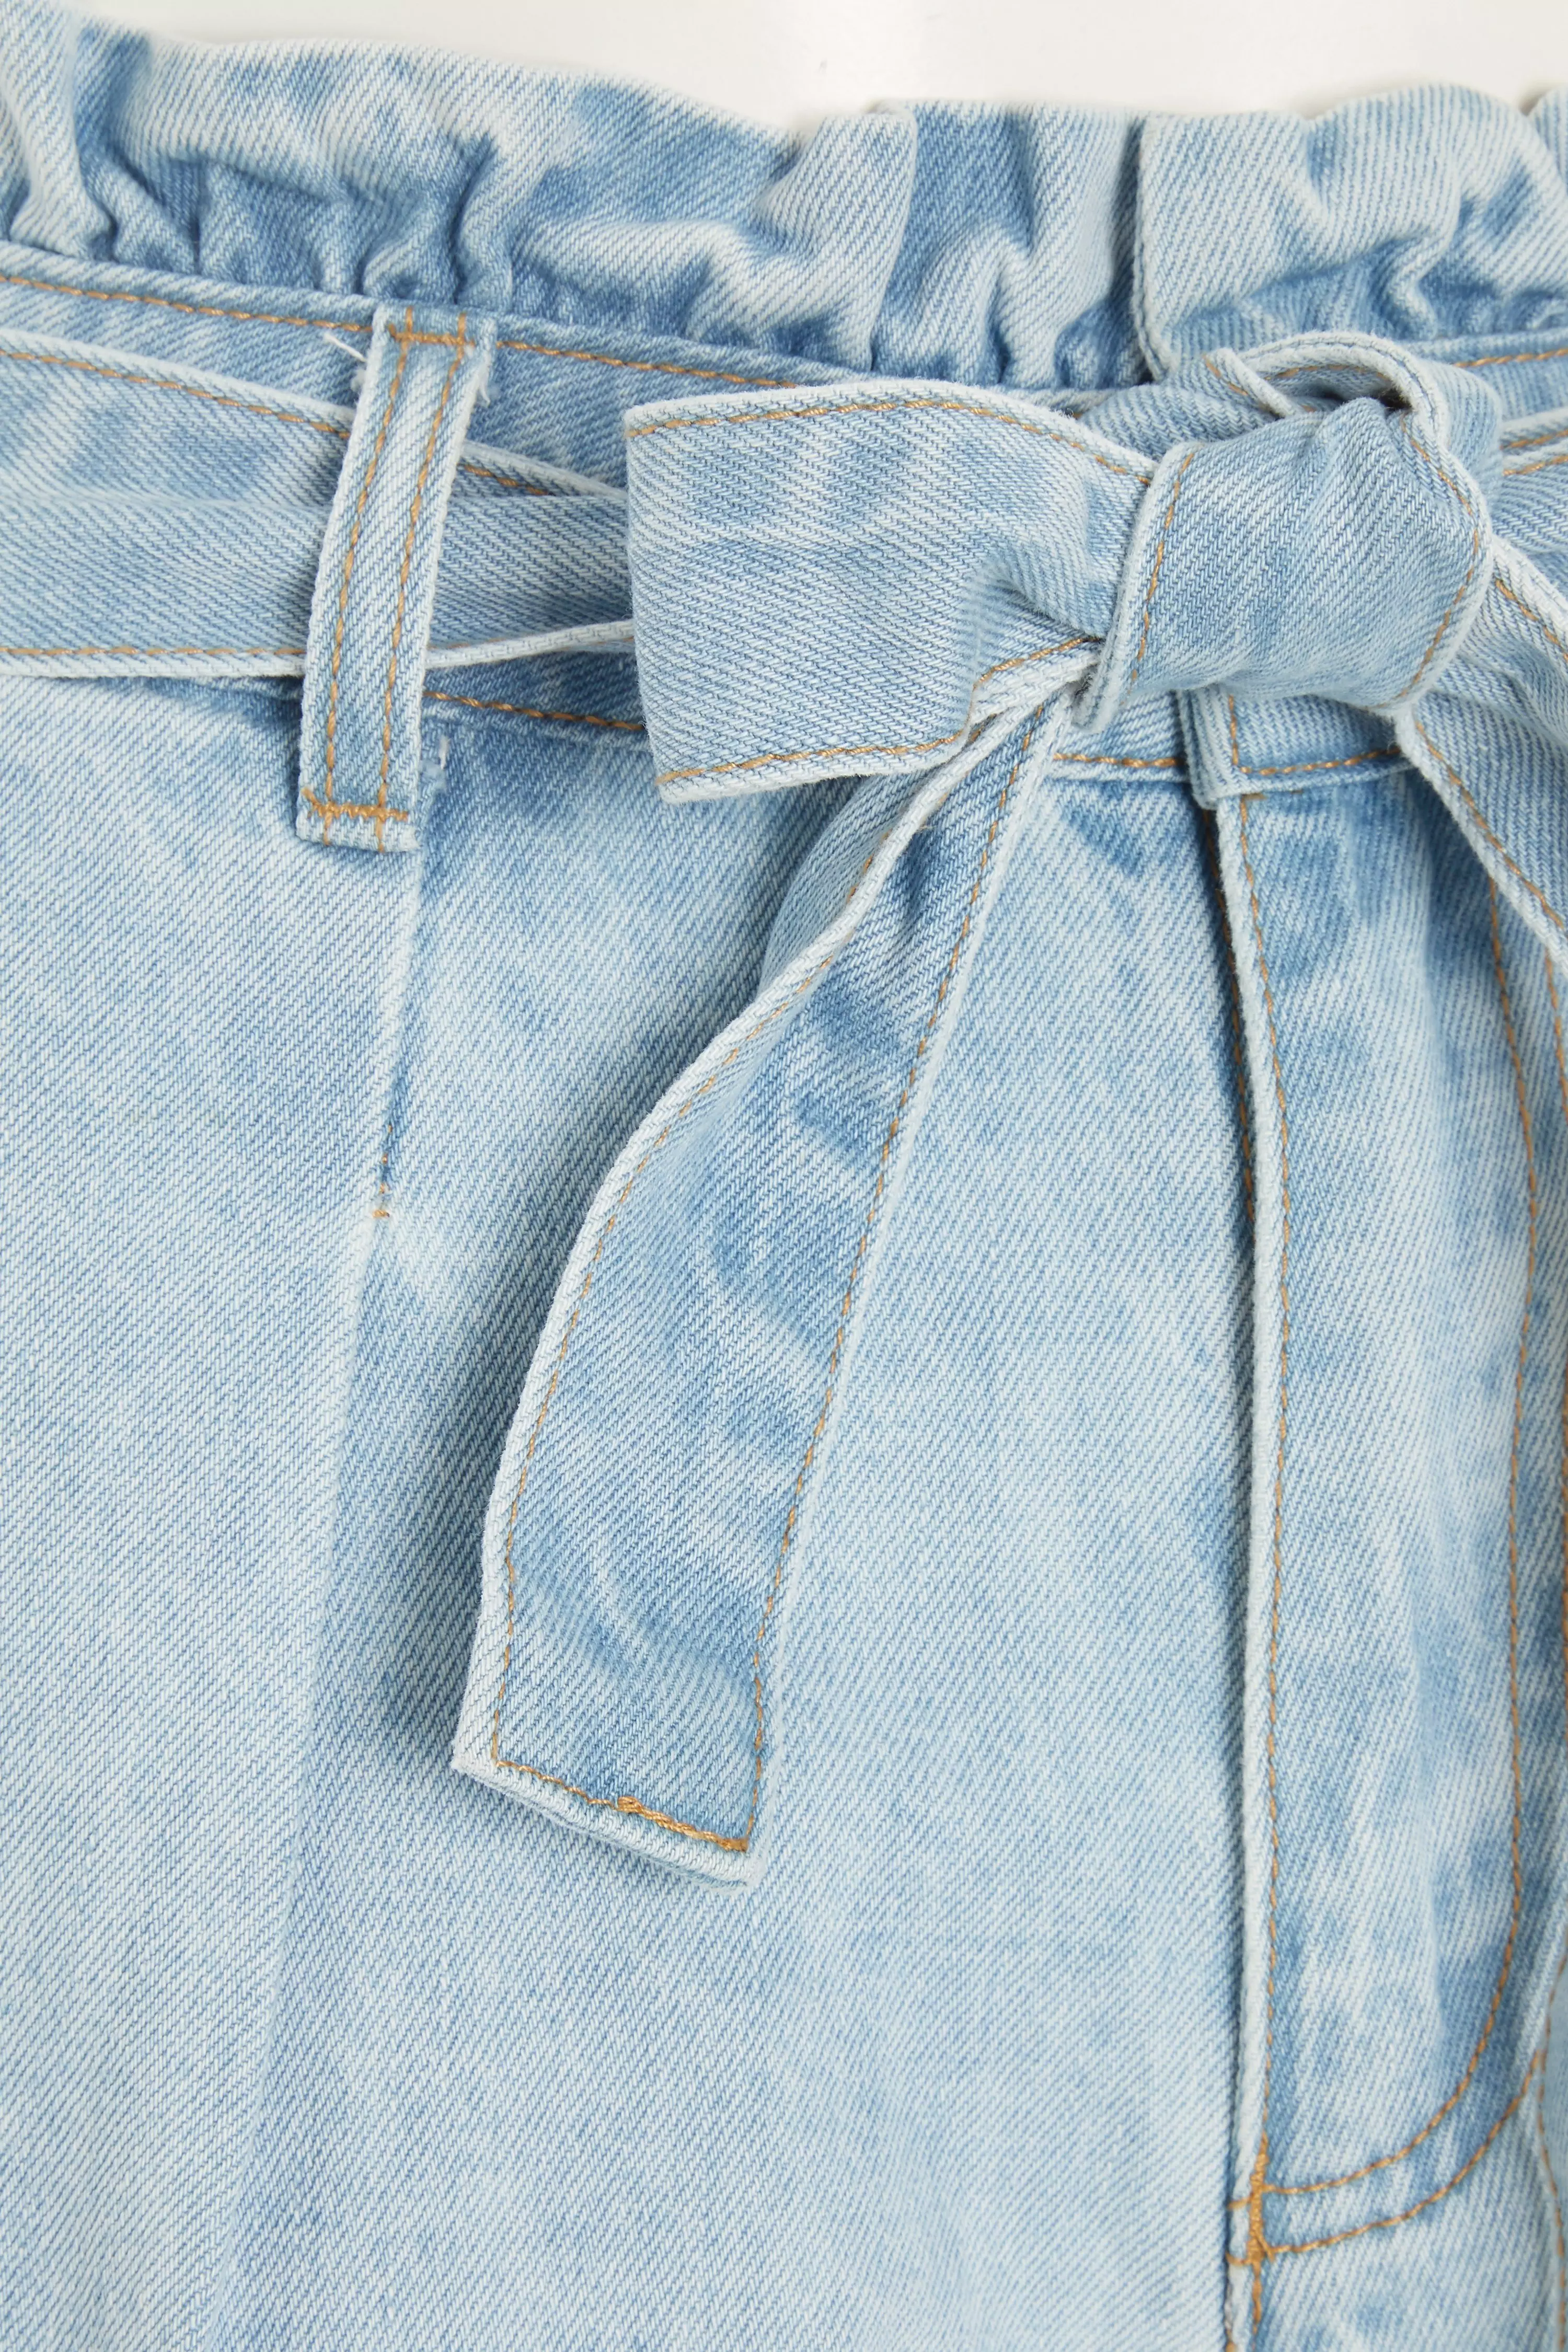 Blue Denim Paperbag Waist Shorts